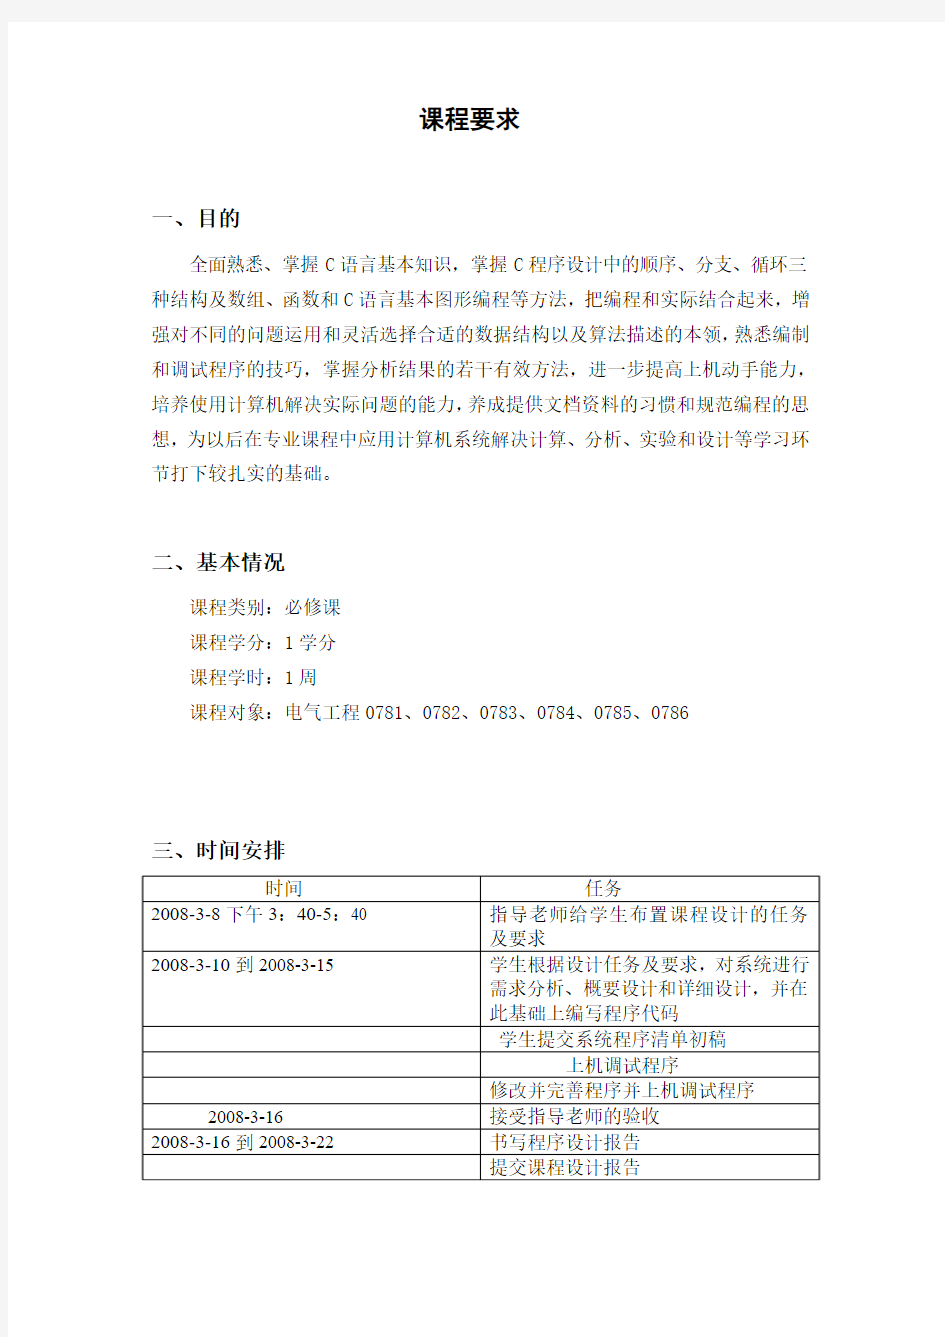 电子英汉词典设计系统